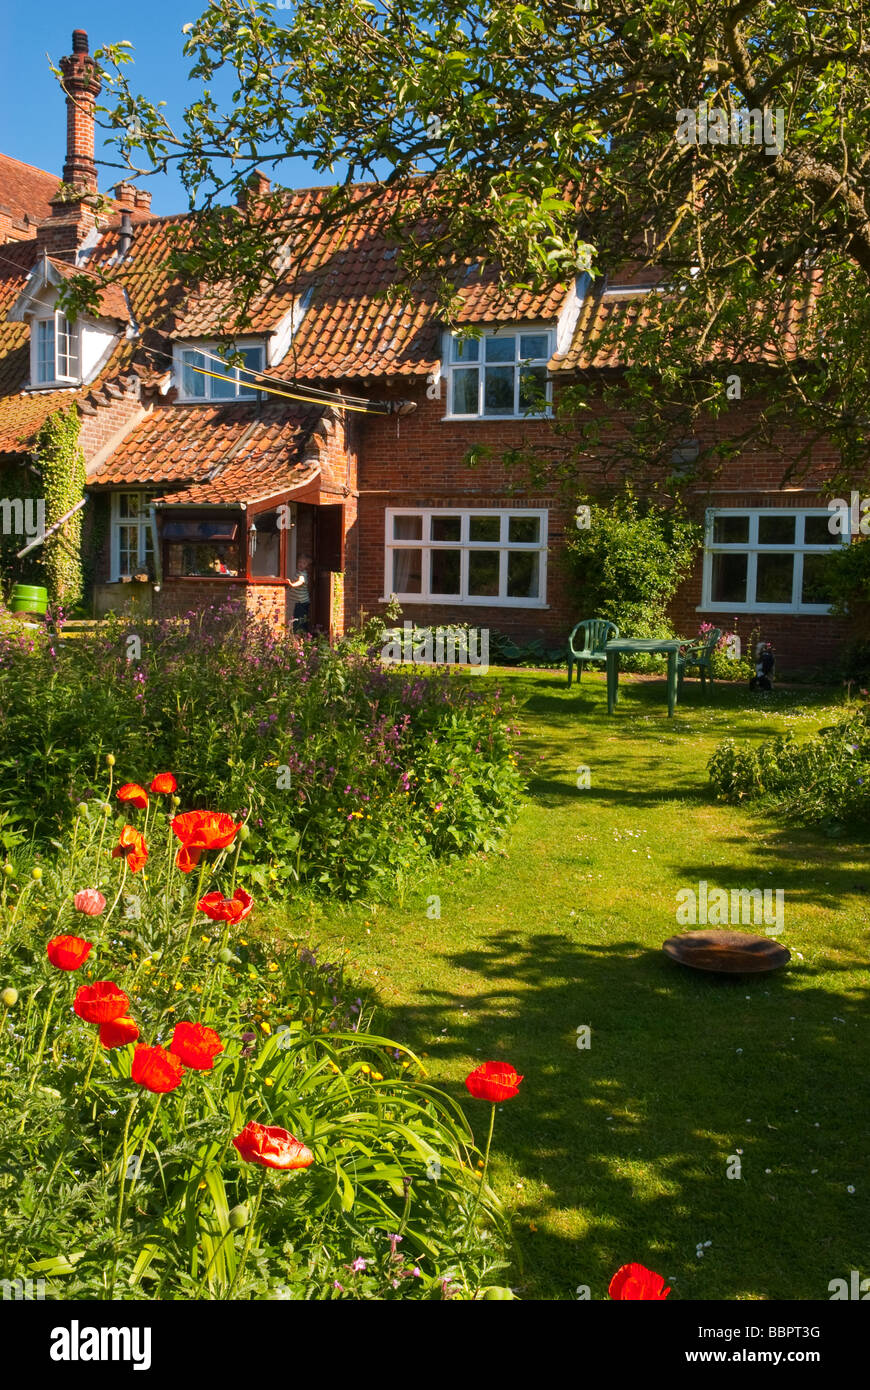 Un charmant cottage anglais au printemps de fleurs de jardin et une vue de la vie d'un pays dans le Suffolk Uk Banque D'Images